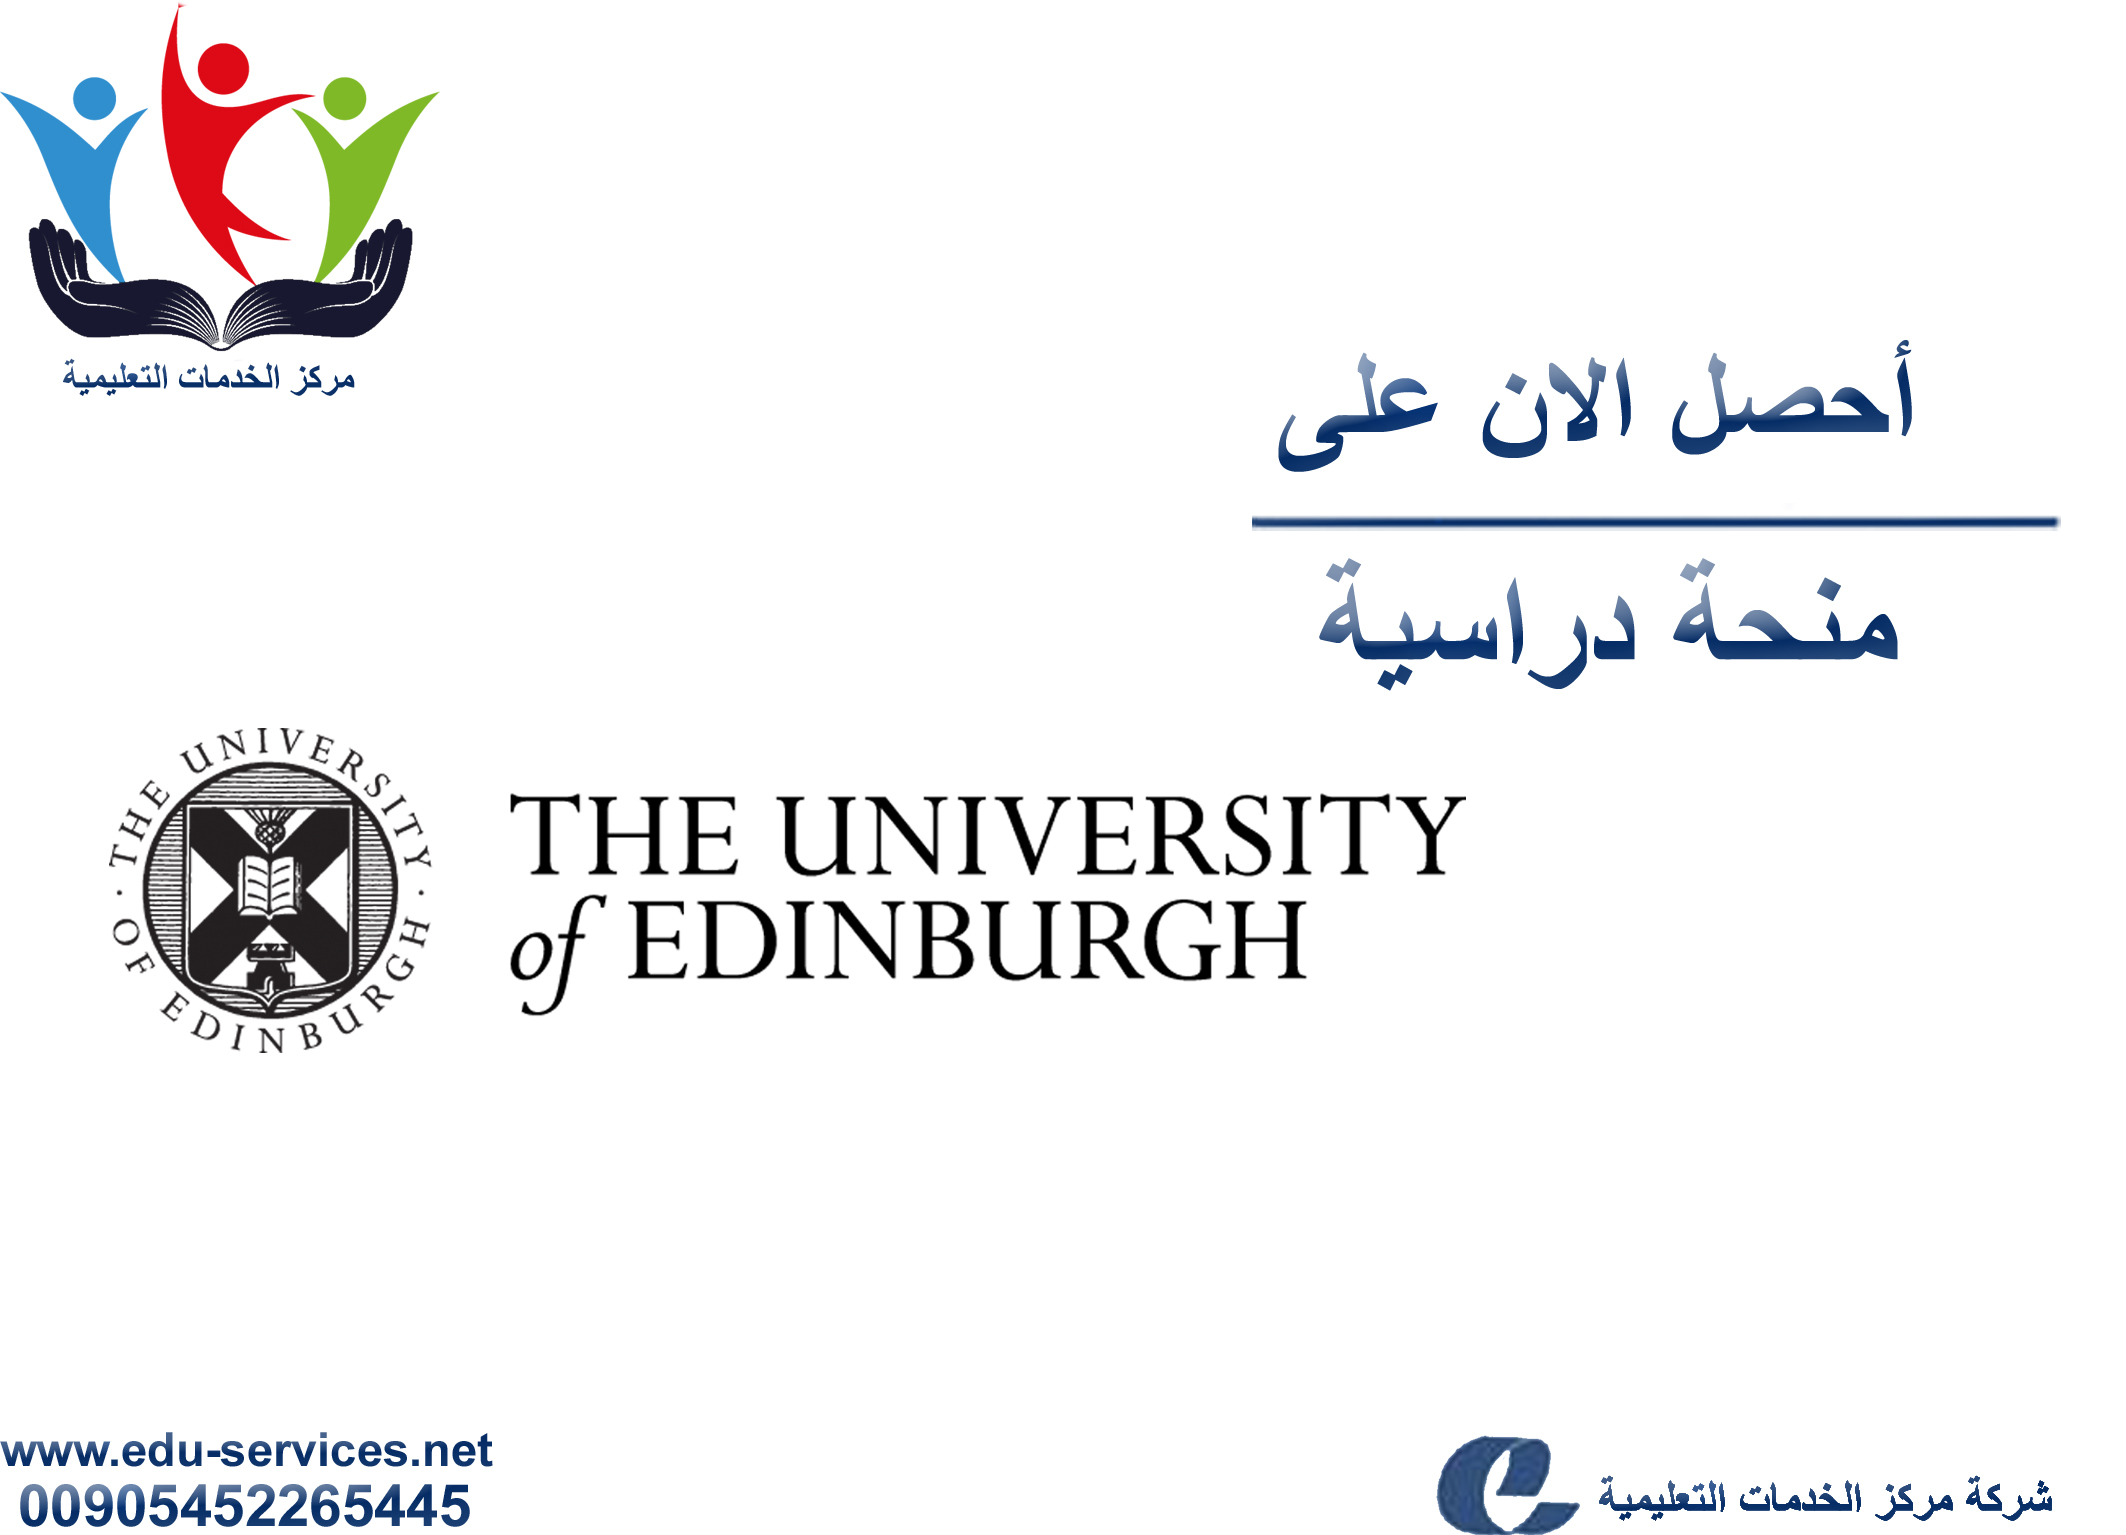 منح دراسية لدرجة الماجستير منUniversity of Edinburgh في انكلترا للعام 2018